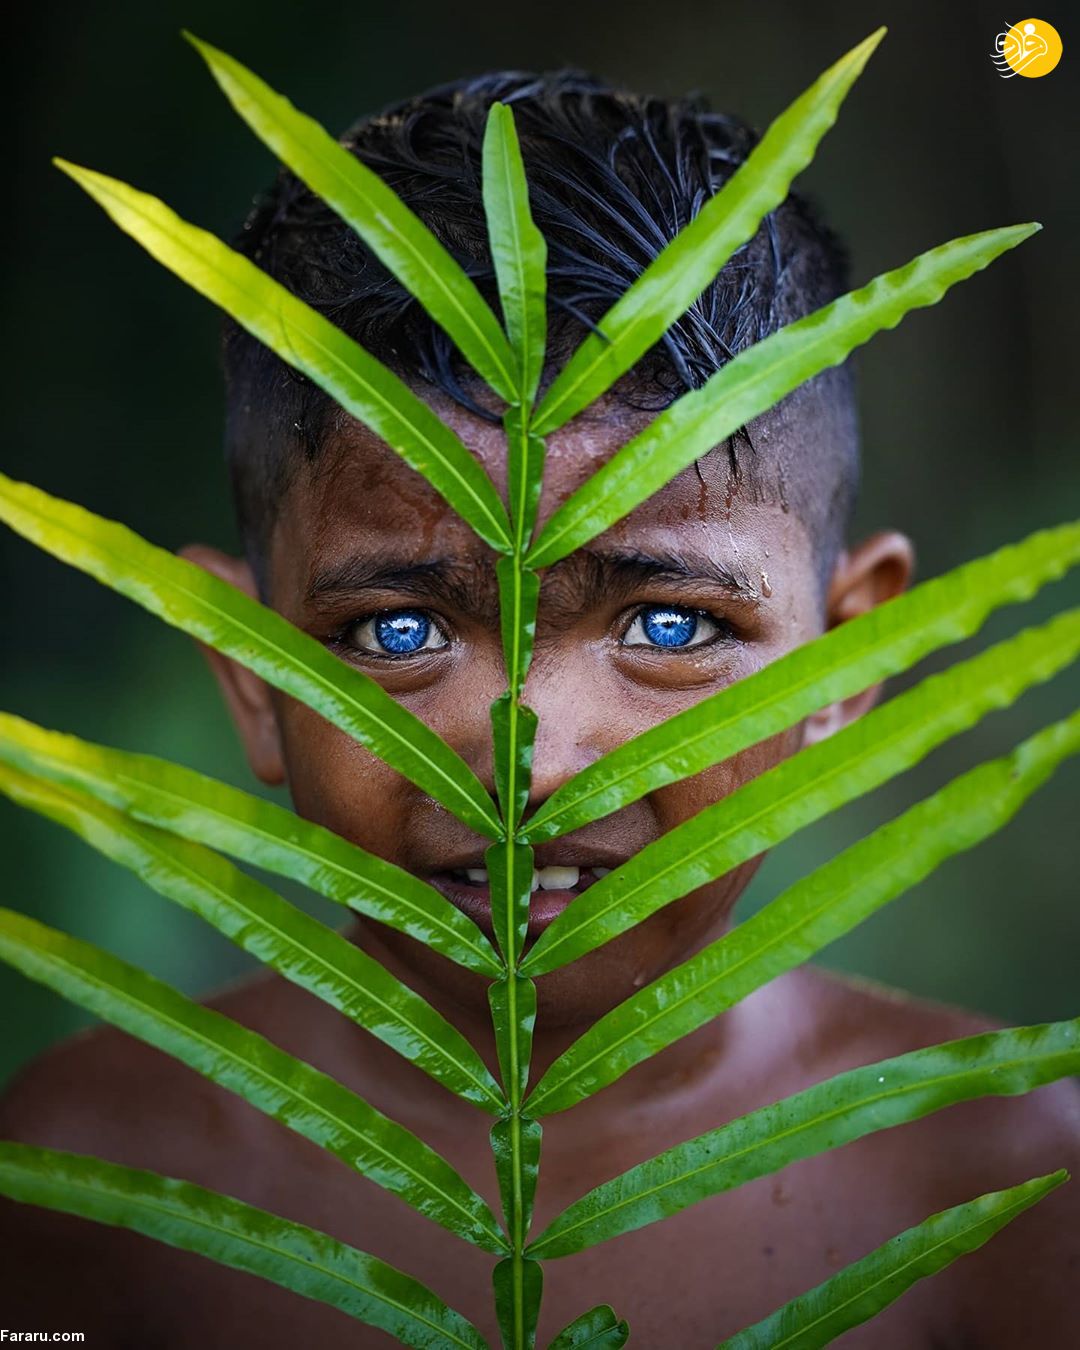 چشمان خاص یک قبیله در اندونزی